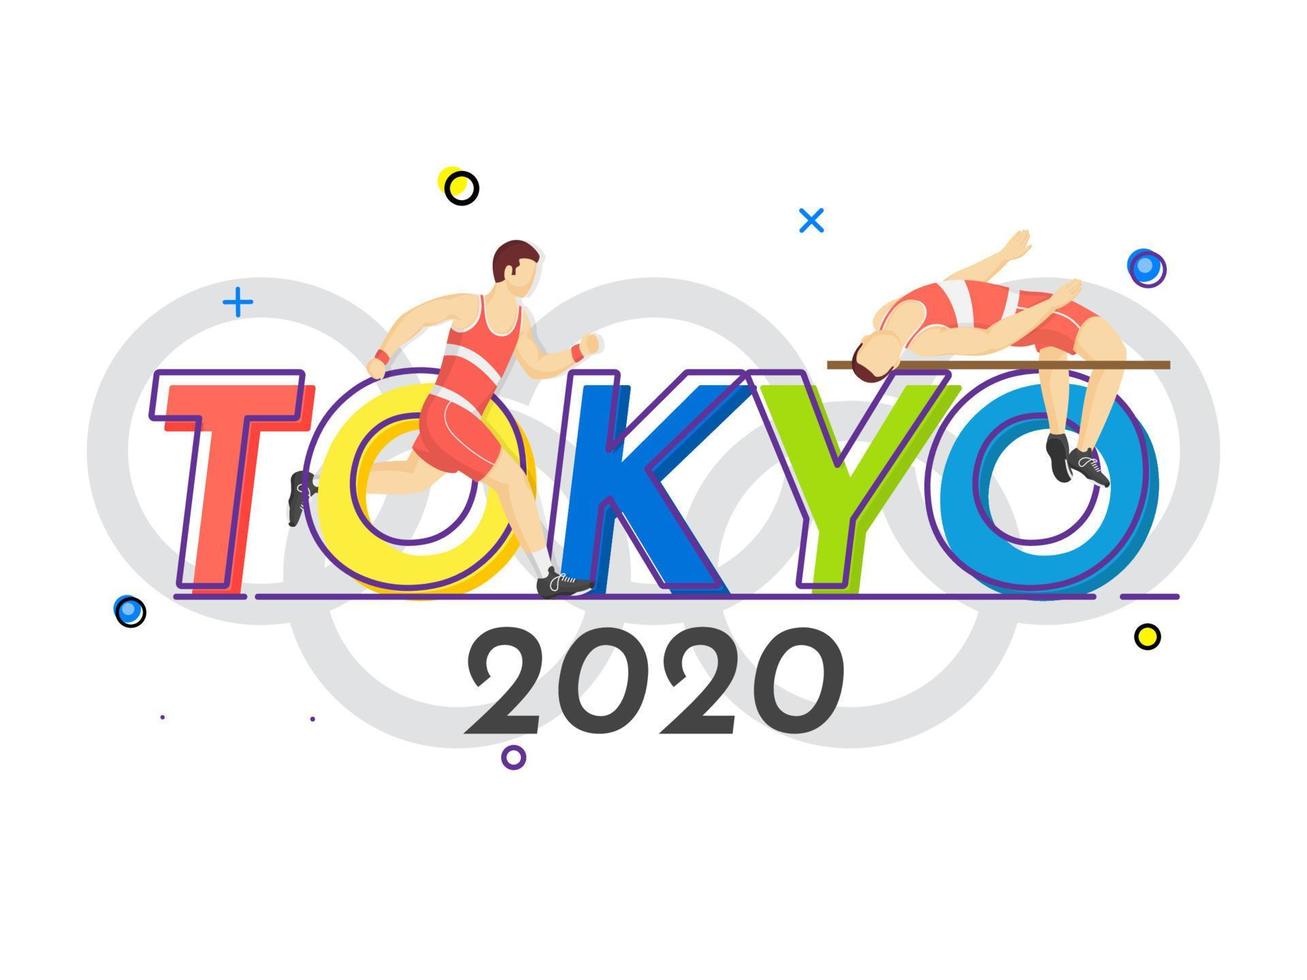 ansiktslös idrottare man hög hoppa tvärstång med löpare karaktär på olympic symbol bakgrund för tokyo 2020. vektor